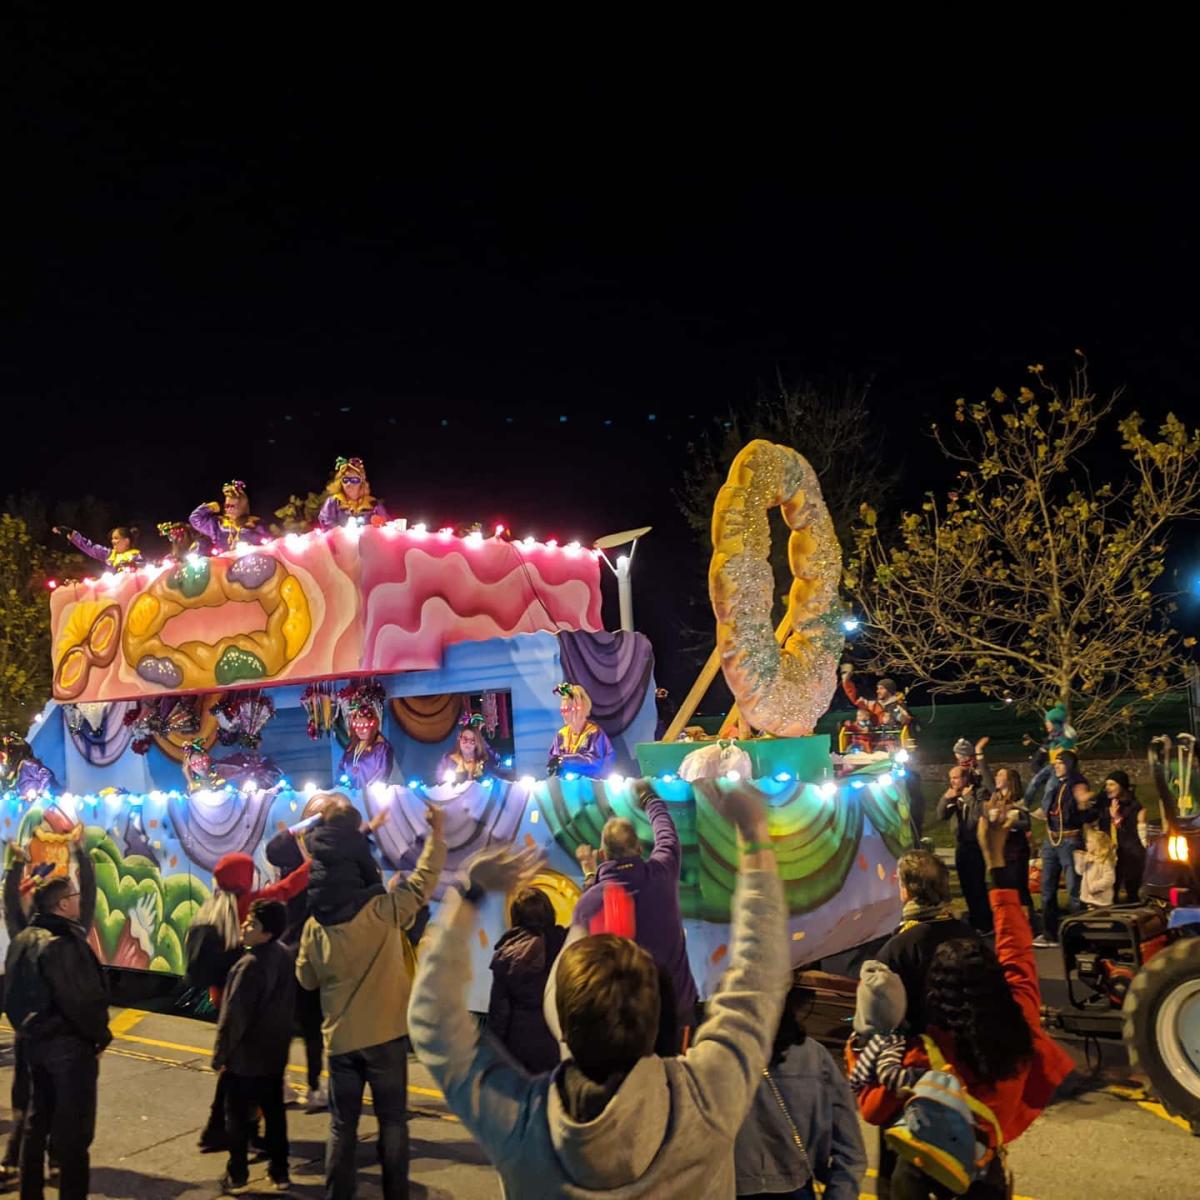 Krewe of Artemis Mardi Gras Parade